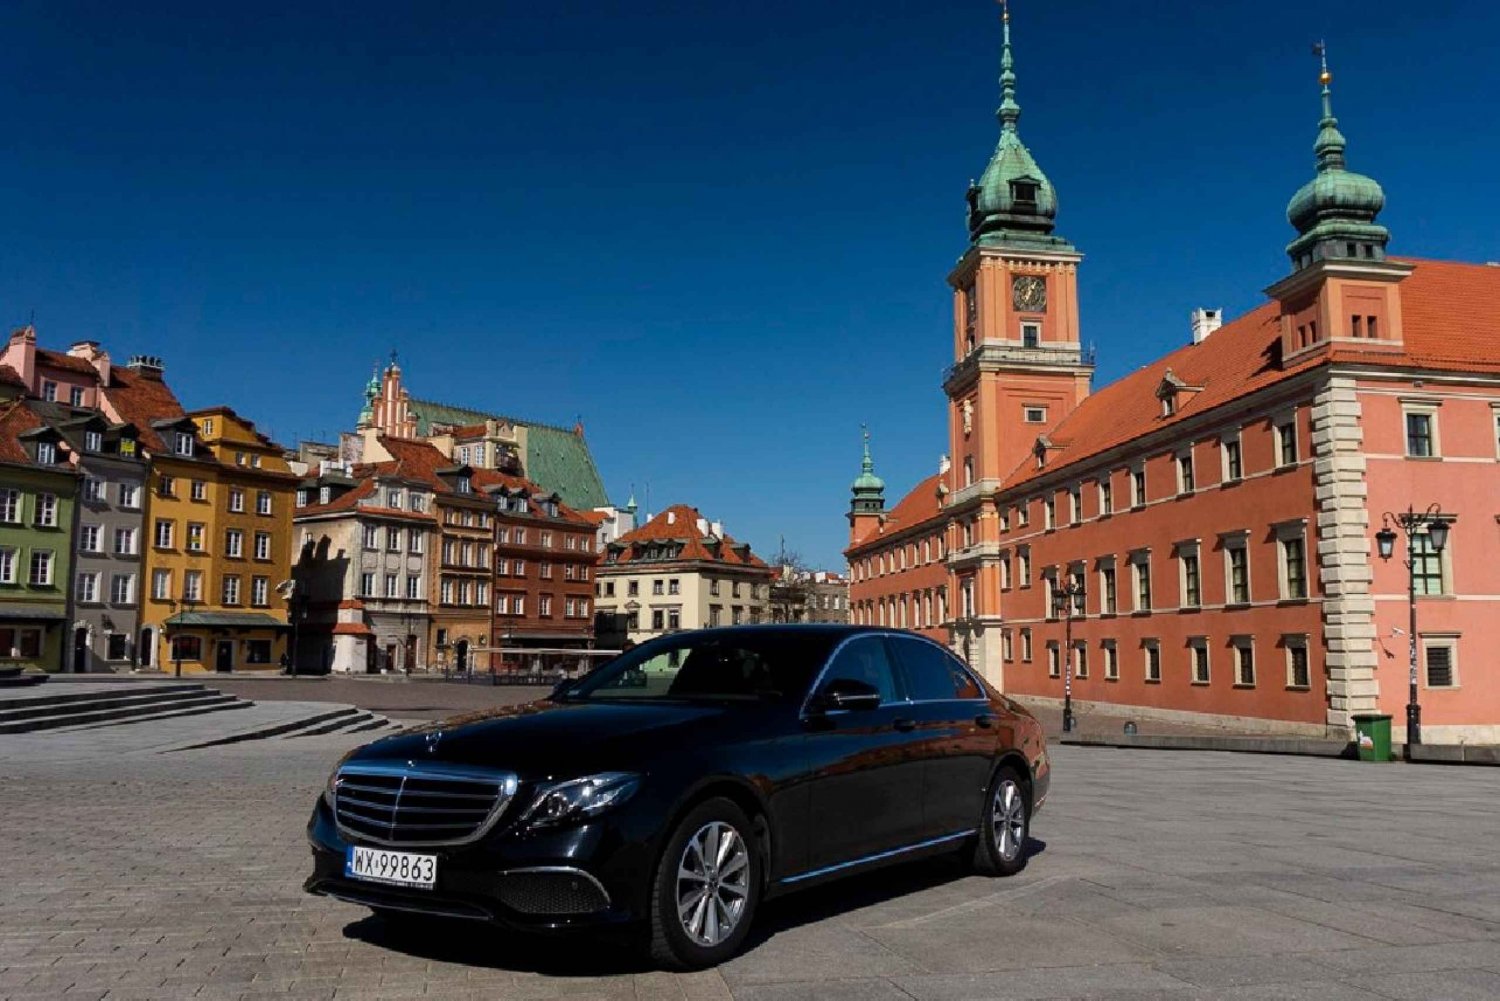 Varsovie : Tour de ville privé d'une journée entière en voiture de luxe